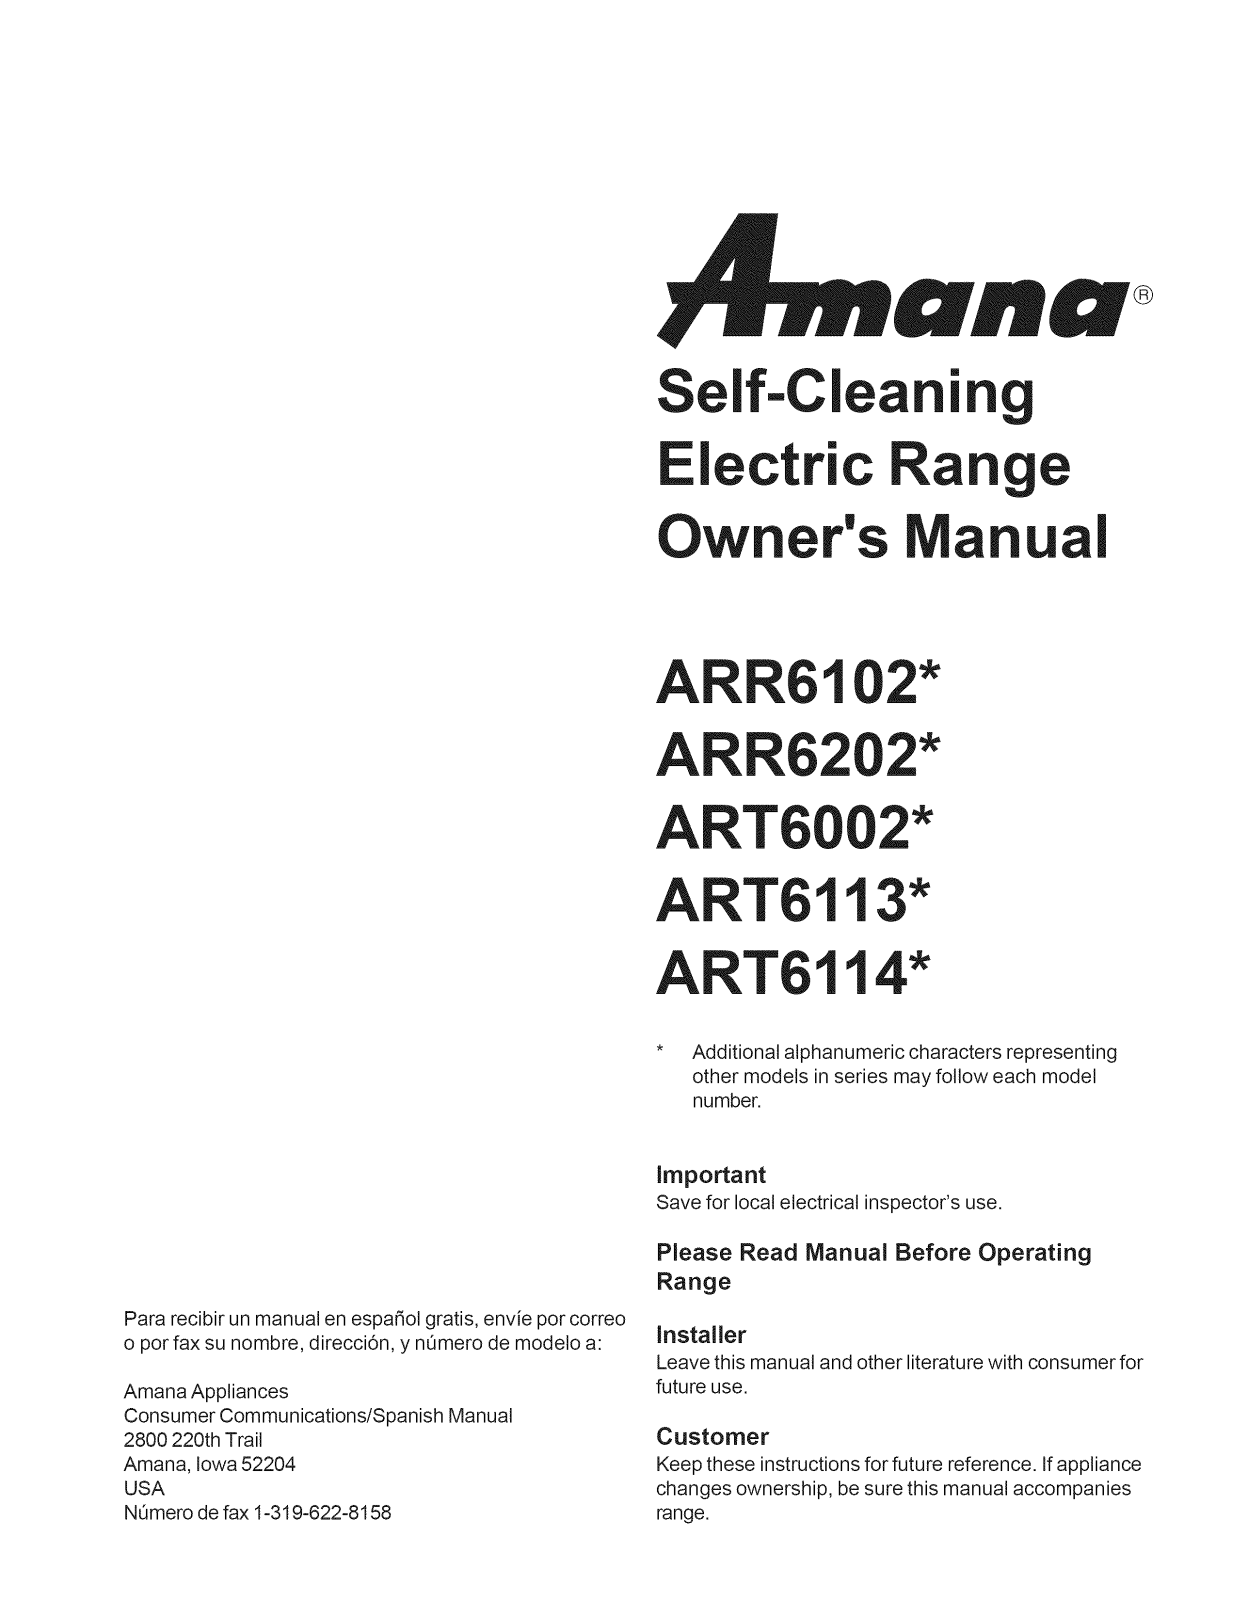 Amana ART6114WW/P1143805NWW, ART6114WW/P1143675NWW, ART6114LL/P1143805NLL, ART6114LL/P1143675NLL, ART6114E/P1143805NE Owner’s Manual